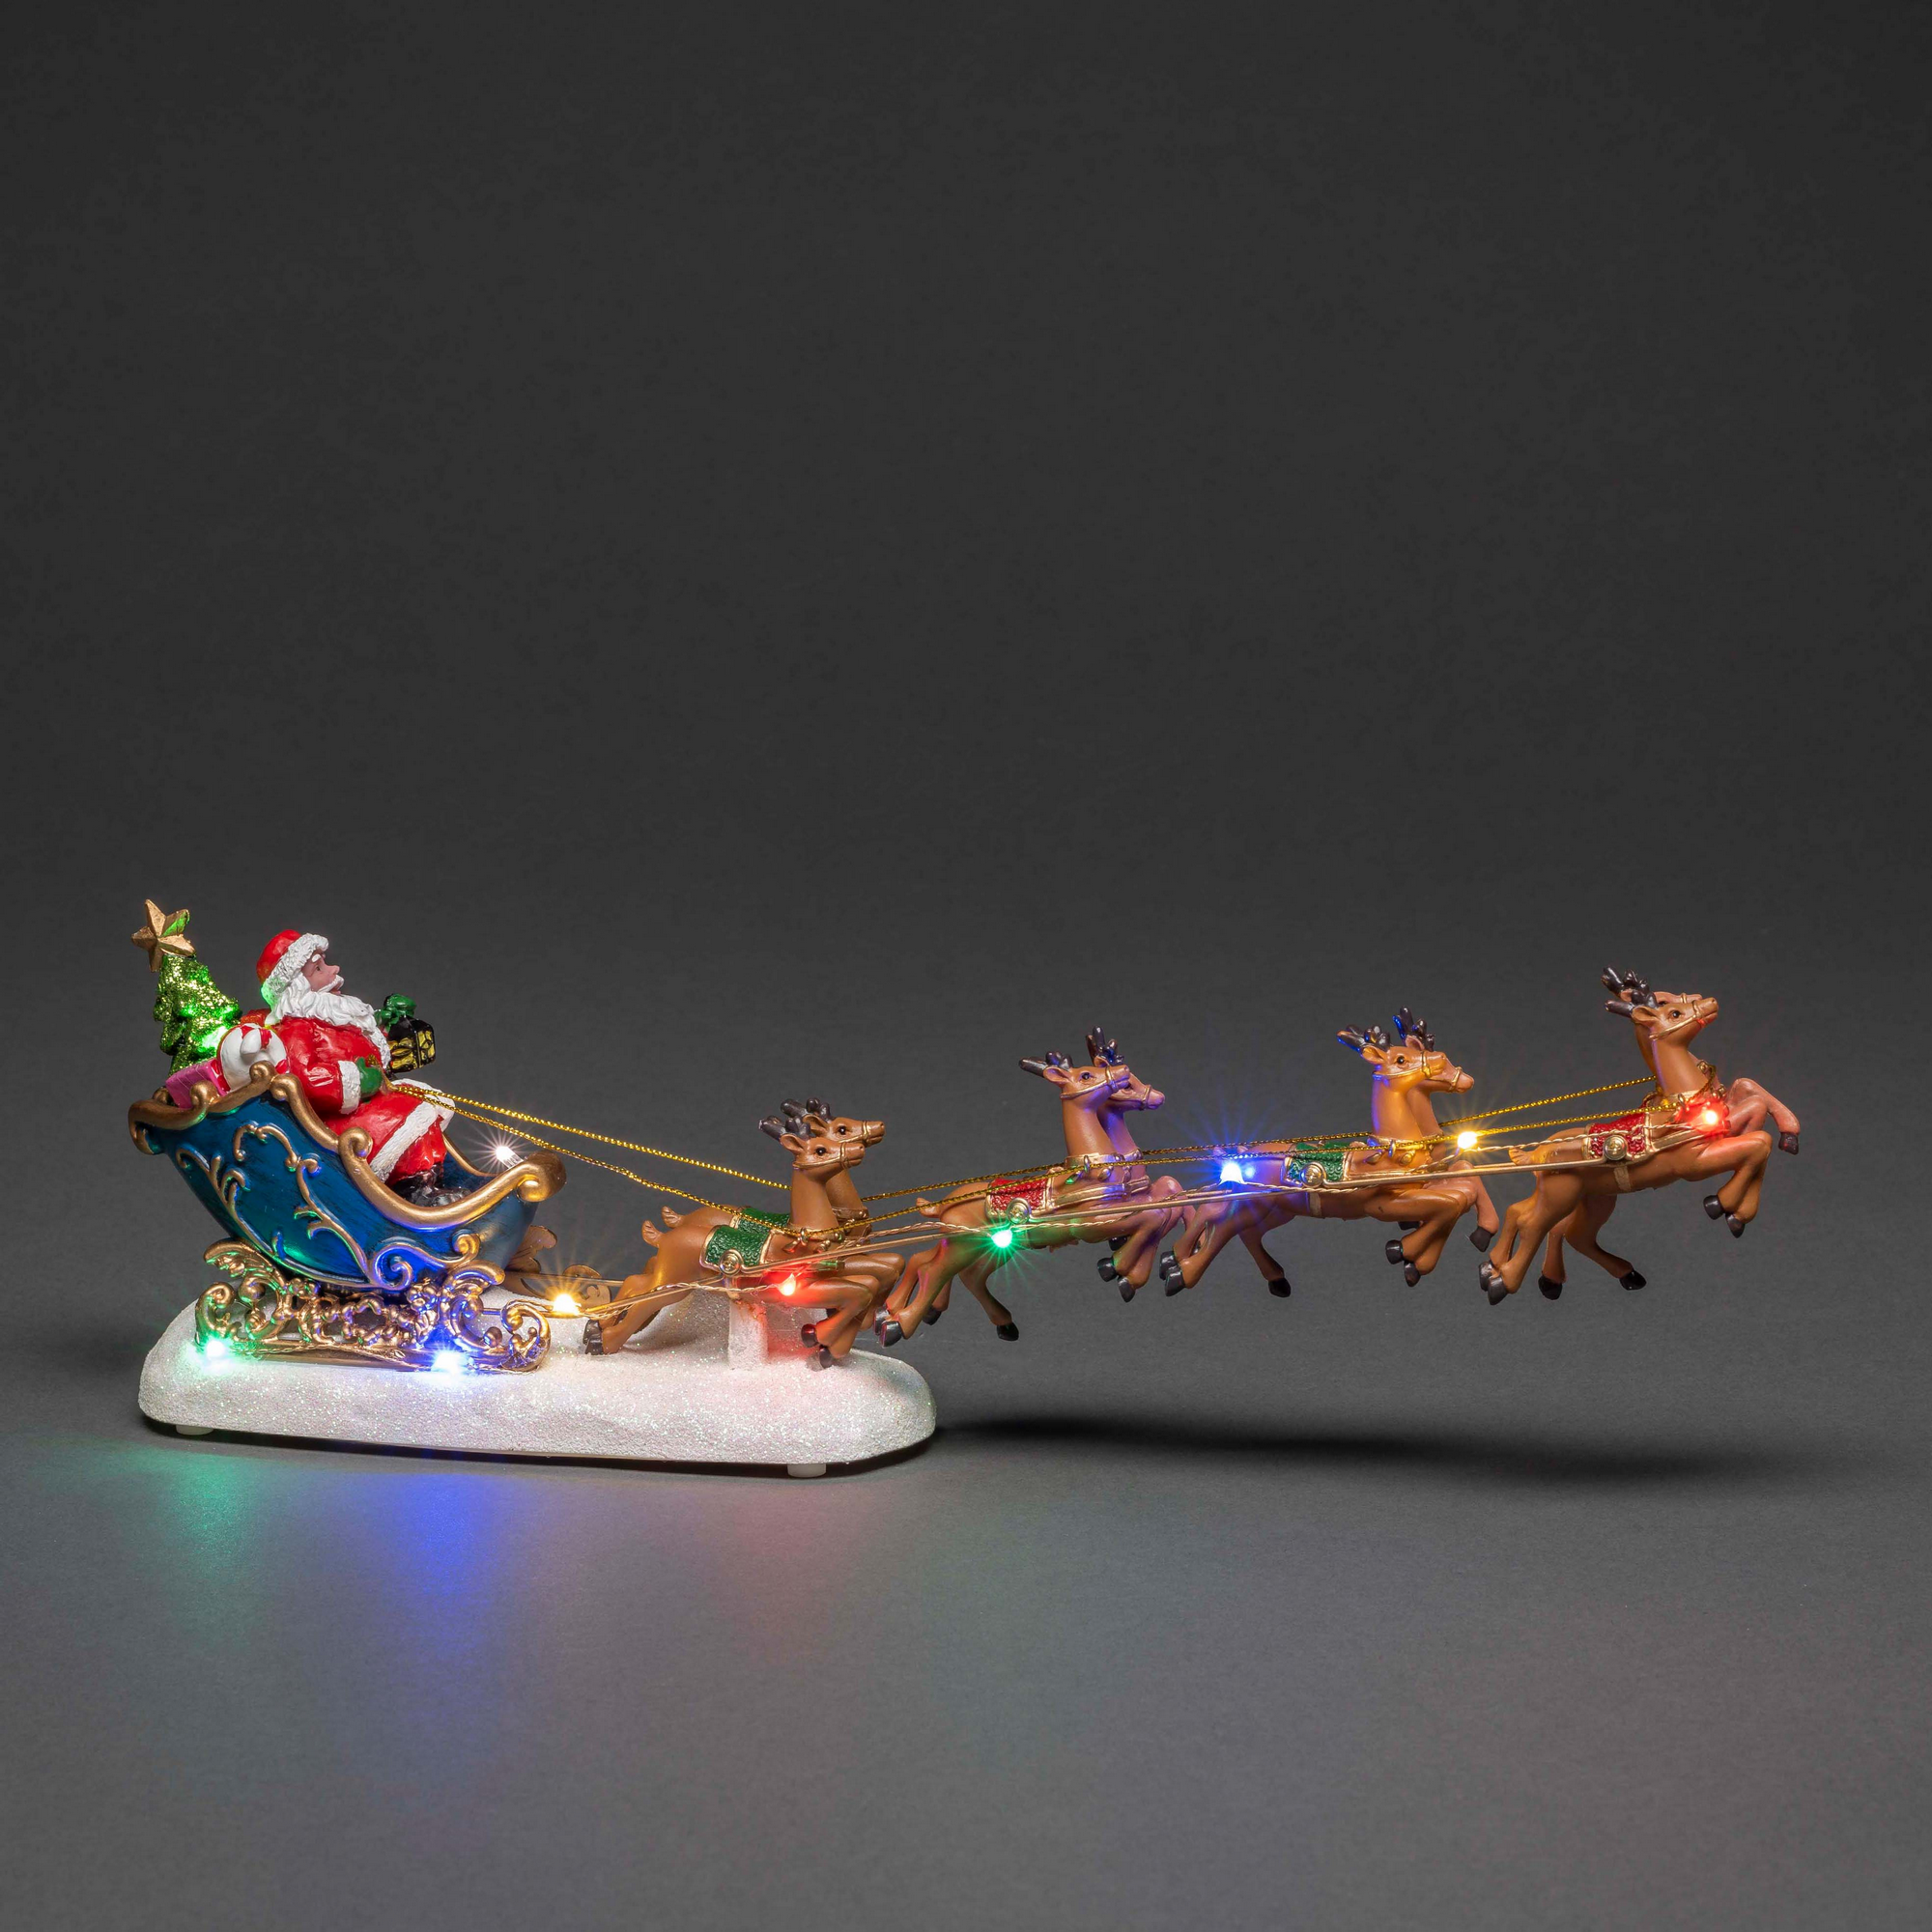 LED-Szenerie 'Weihnachtsmann im Schlitten' 10 LEDs bunt 35,5 x 14 cm + product picture